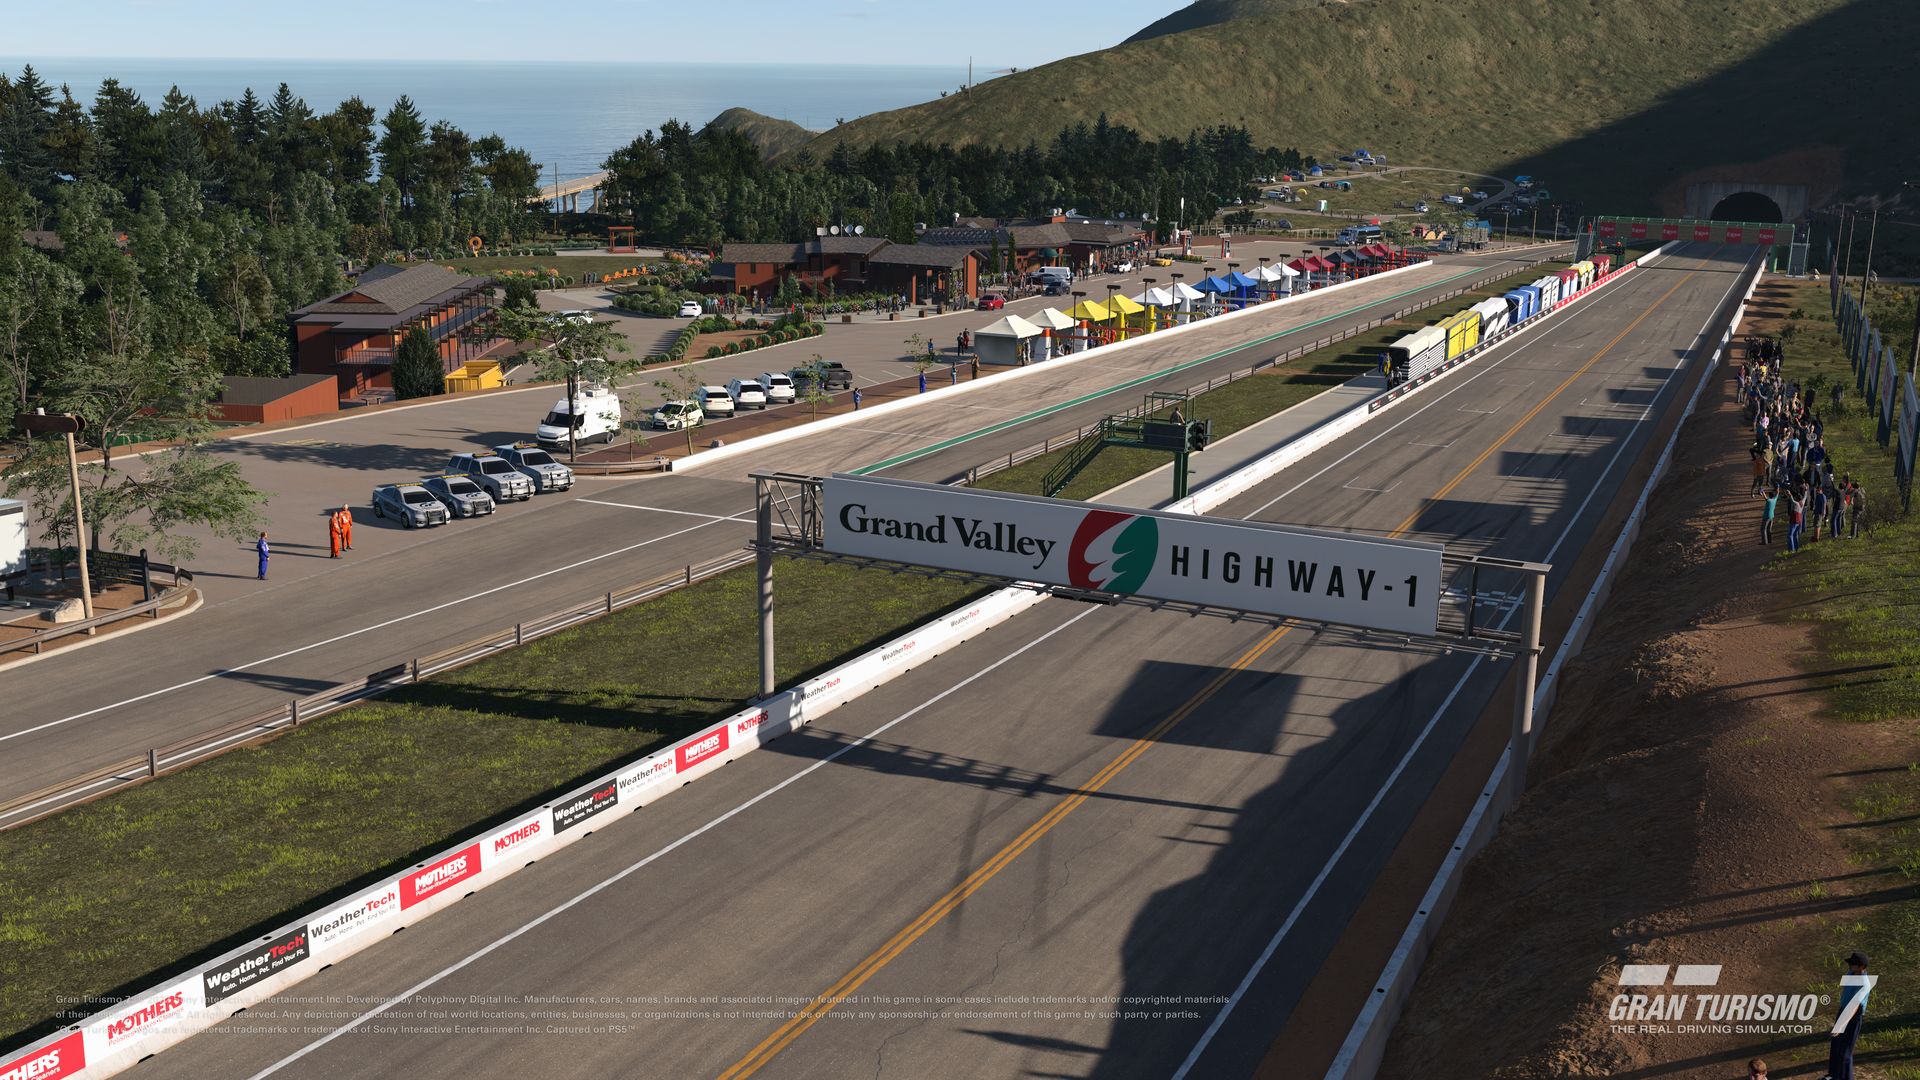 Veja os detalhes atualização de fevereiro de Gran Turismo 7; cinco carros  novos e pista Grand Valley - PSX Brasil